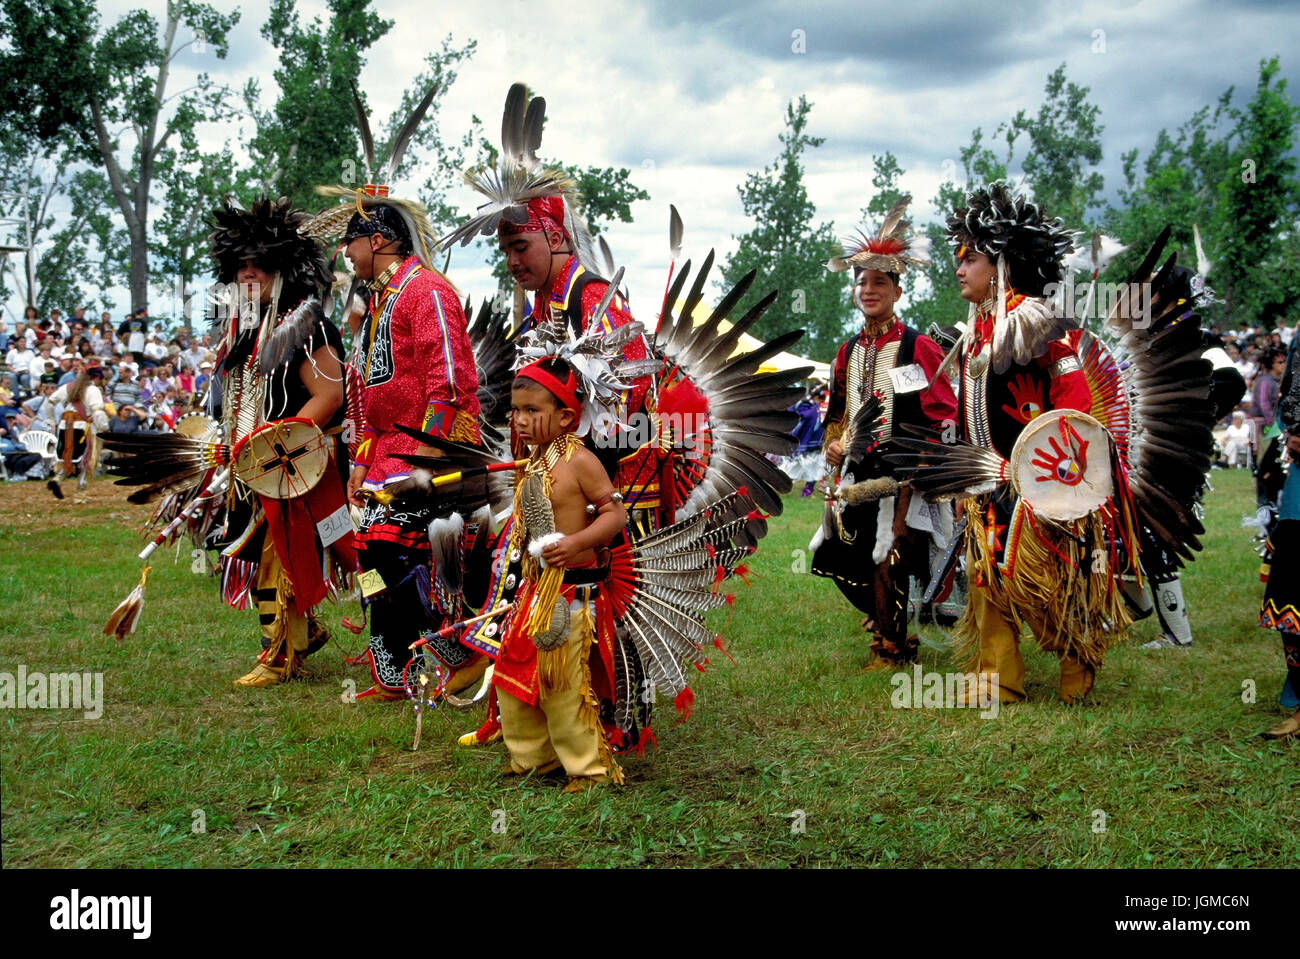 Mohikaner avec le Pow-Wow dans la réserve de Kahnawake, près de Montréal, Canada, Queebec Mohikaner beim Pow-Wow im Kahnawake Reservat bei Montréal, Kanada Banque D'Images